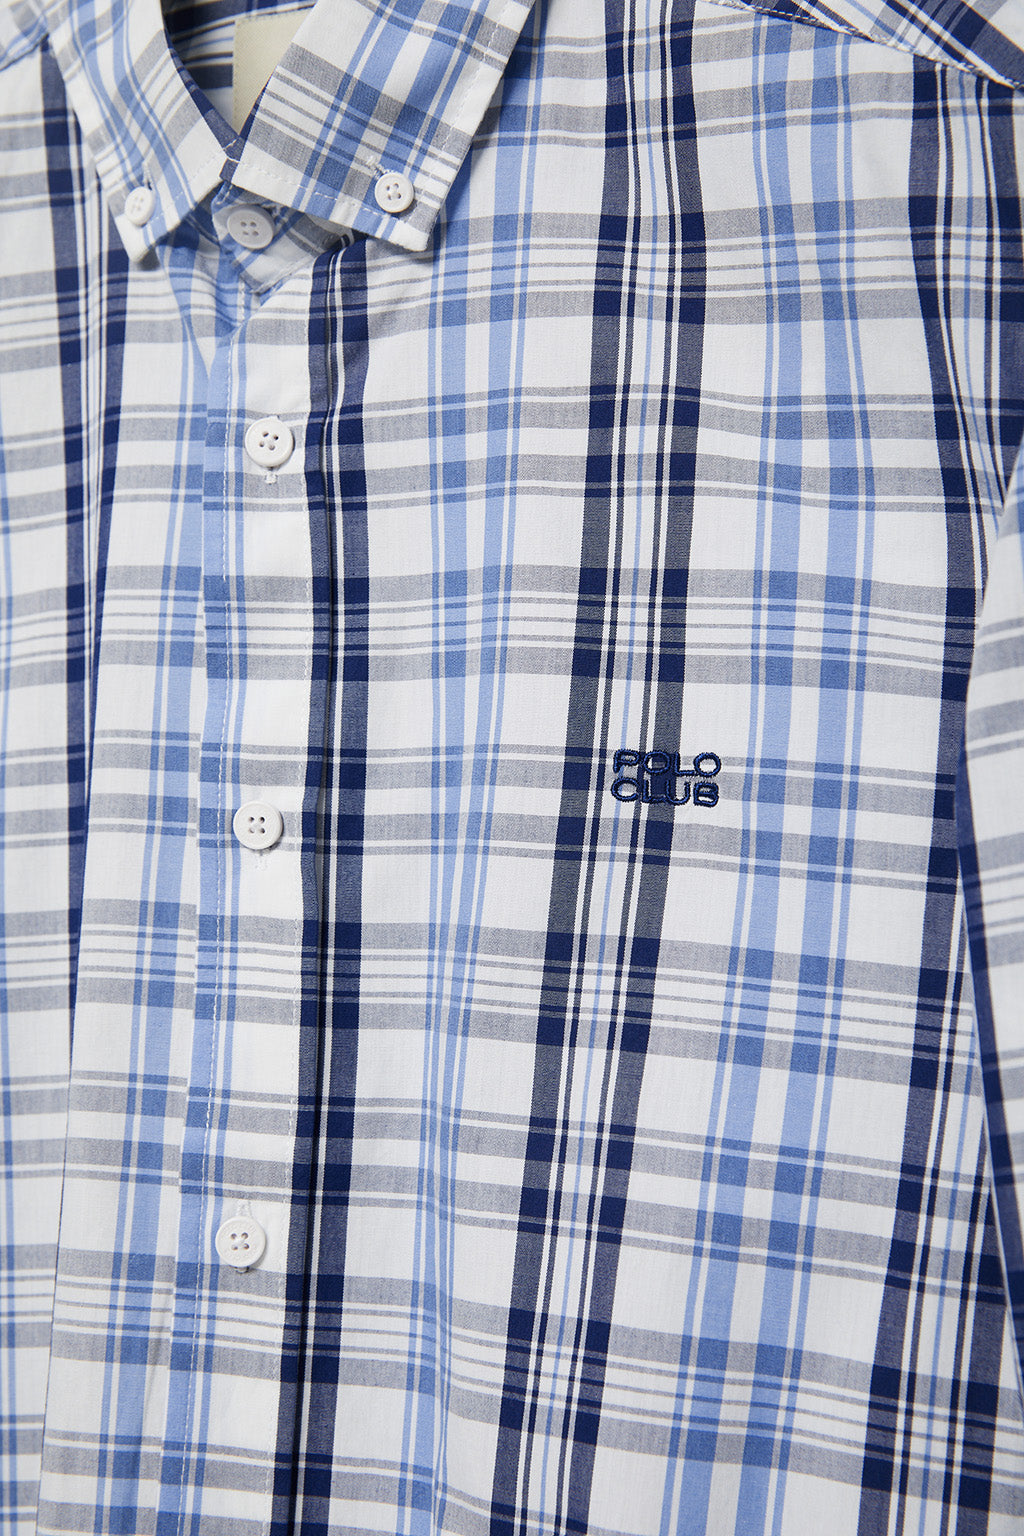 Camisa de cuadros en tonos azules y blanco con logo bordado Polo